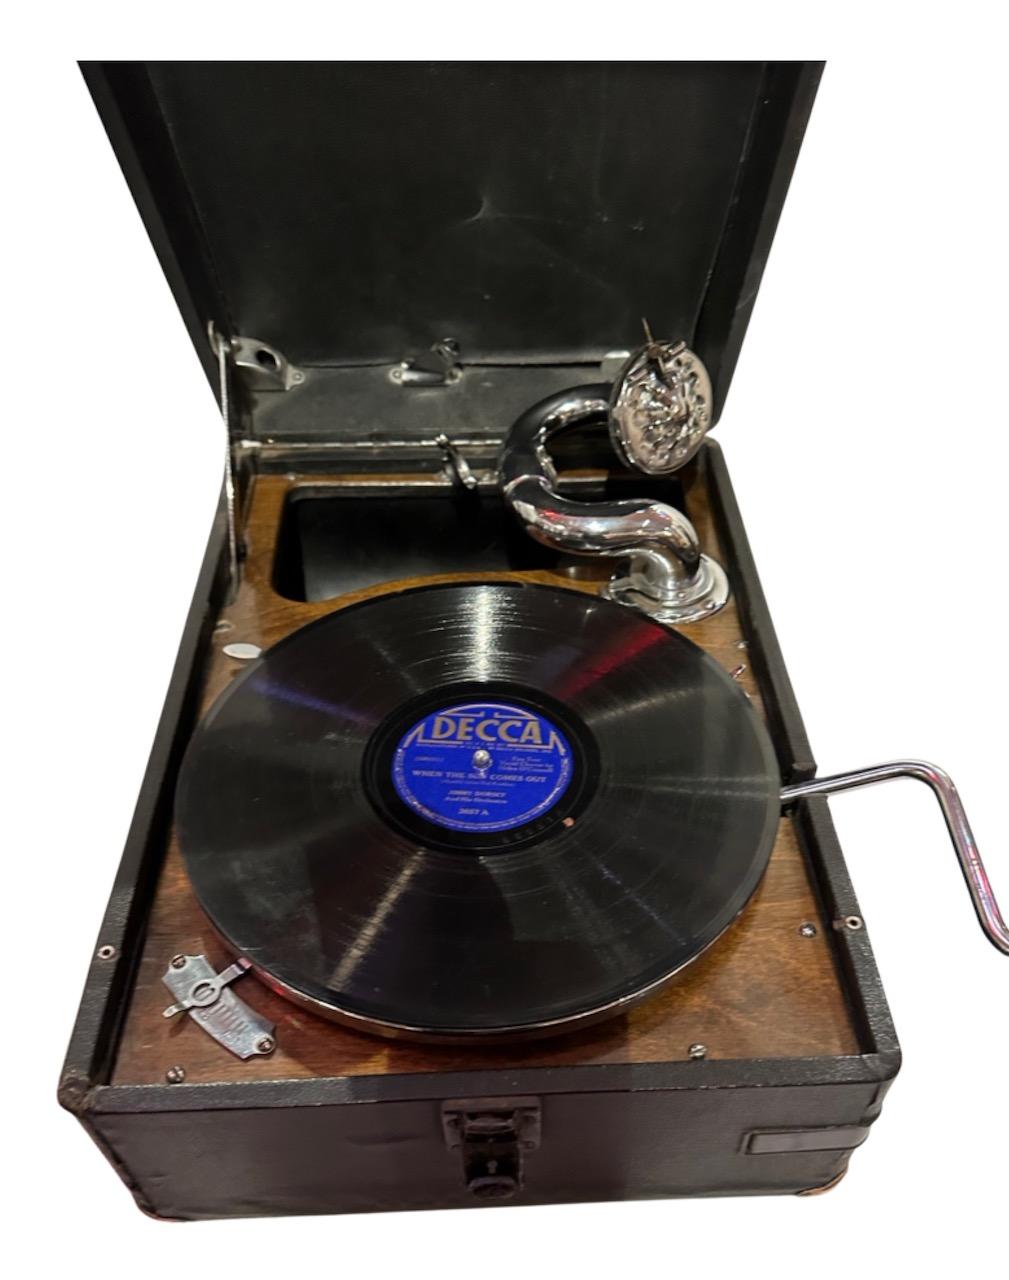 1930 Tragbares Grammophon mit der Stimme seines Meisters, original verpackt. Dieses tragbare Grammophon von 1930 ist ein echtes Stück. Es handelt sich um ein HMV-Modell 101, das Teil einer kleinen Sammlung solcher klassischer, restaurierter